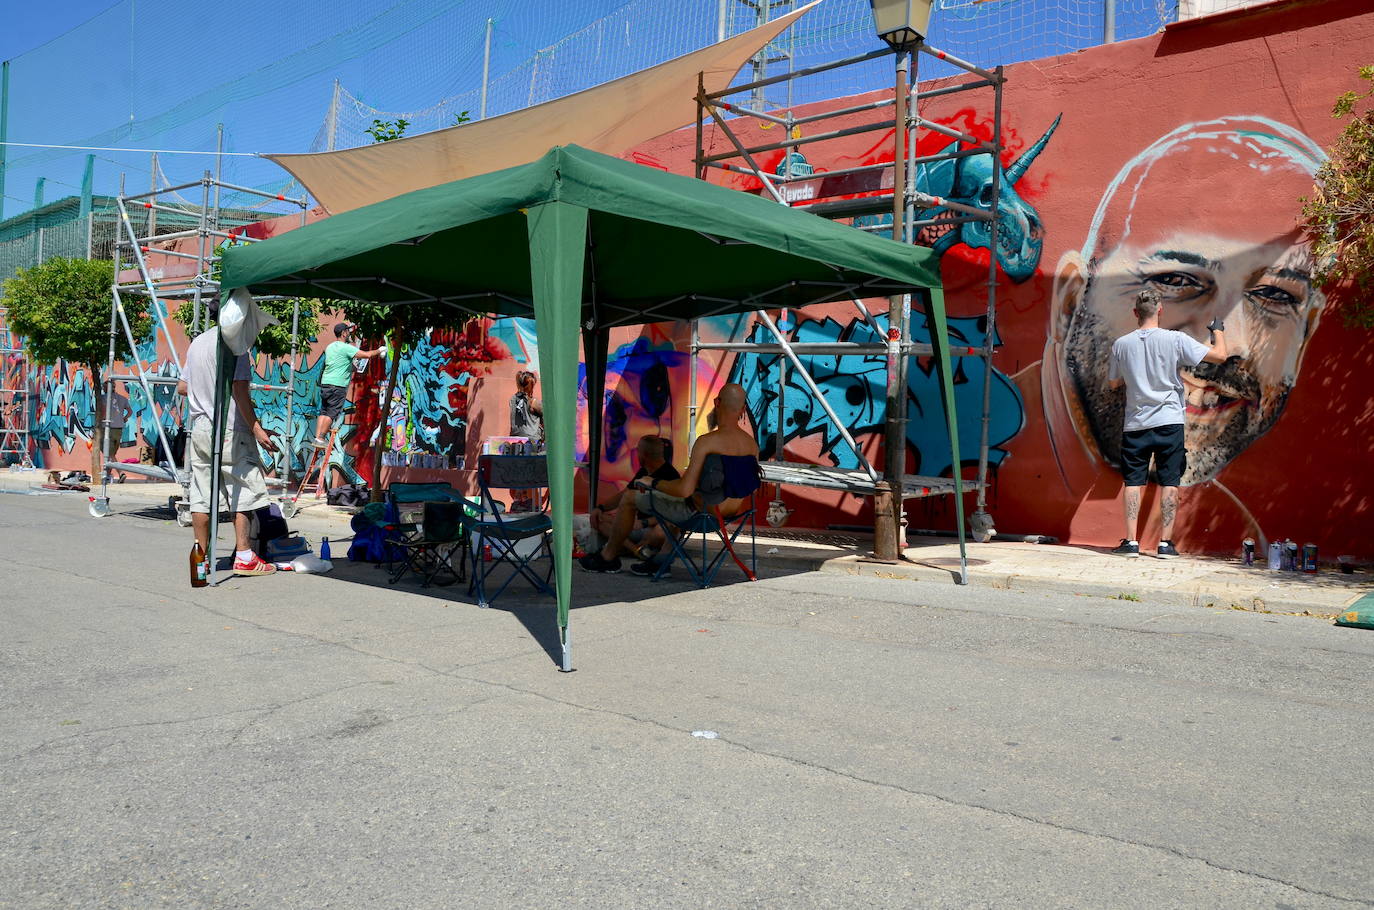 El arte urbano envuelve el campo de fútbol de Huétor Vega